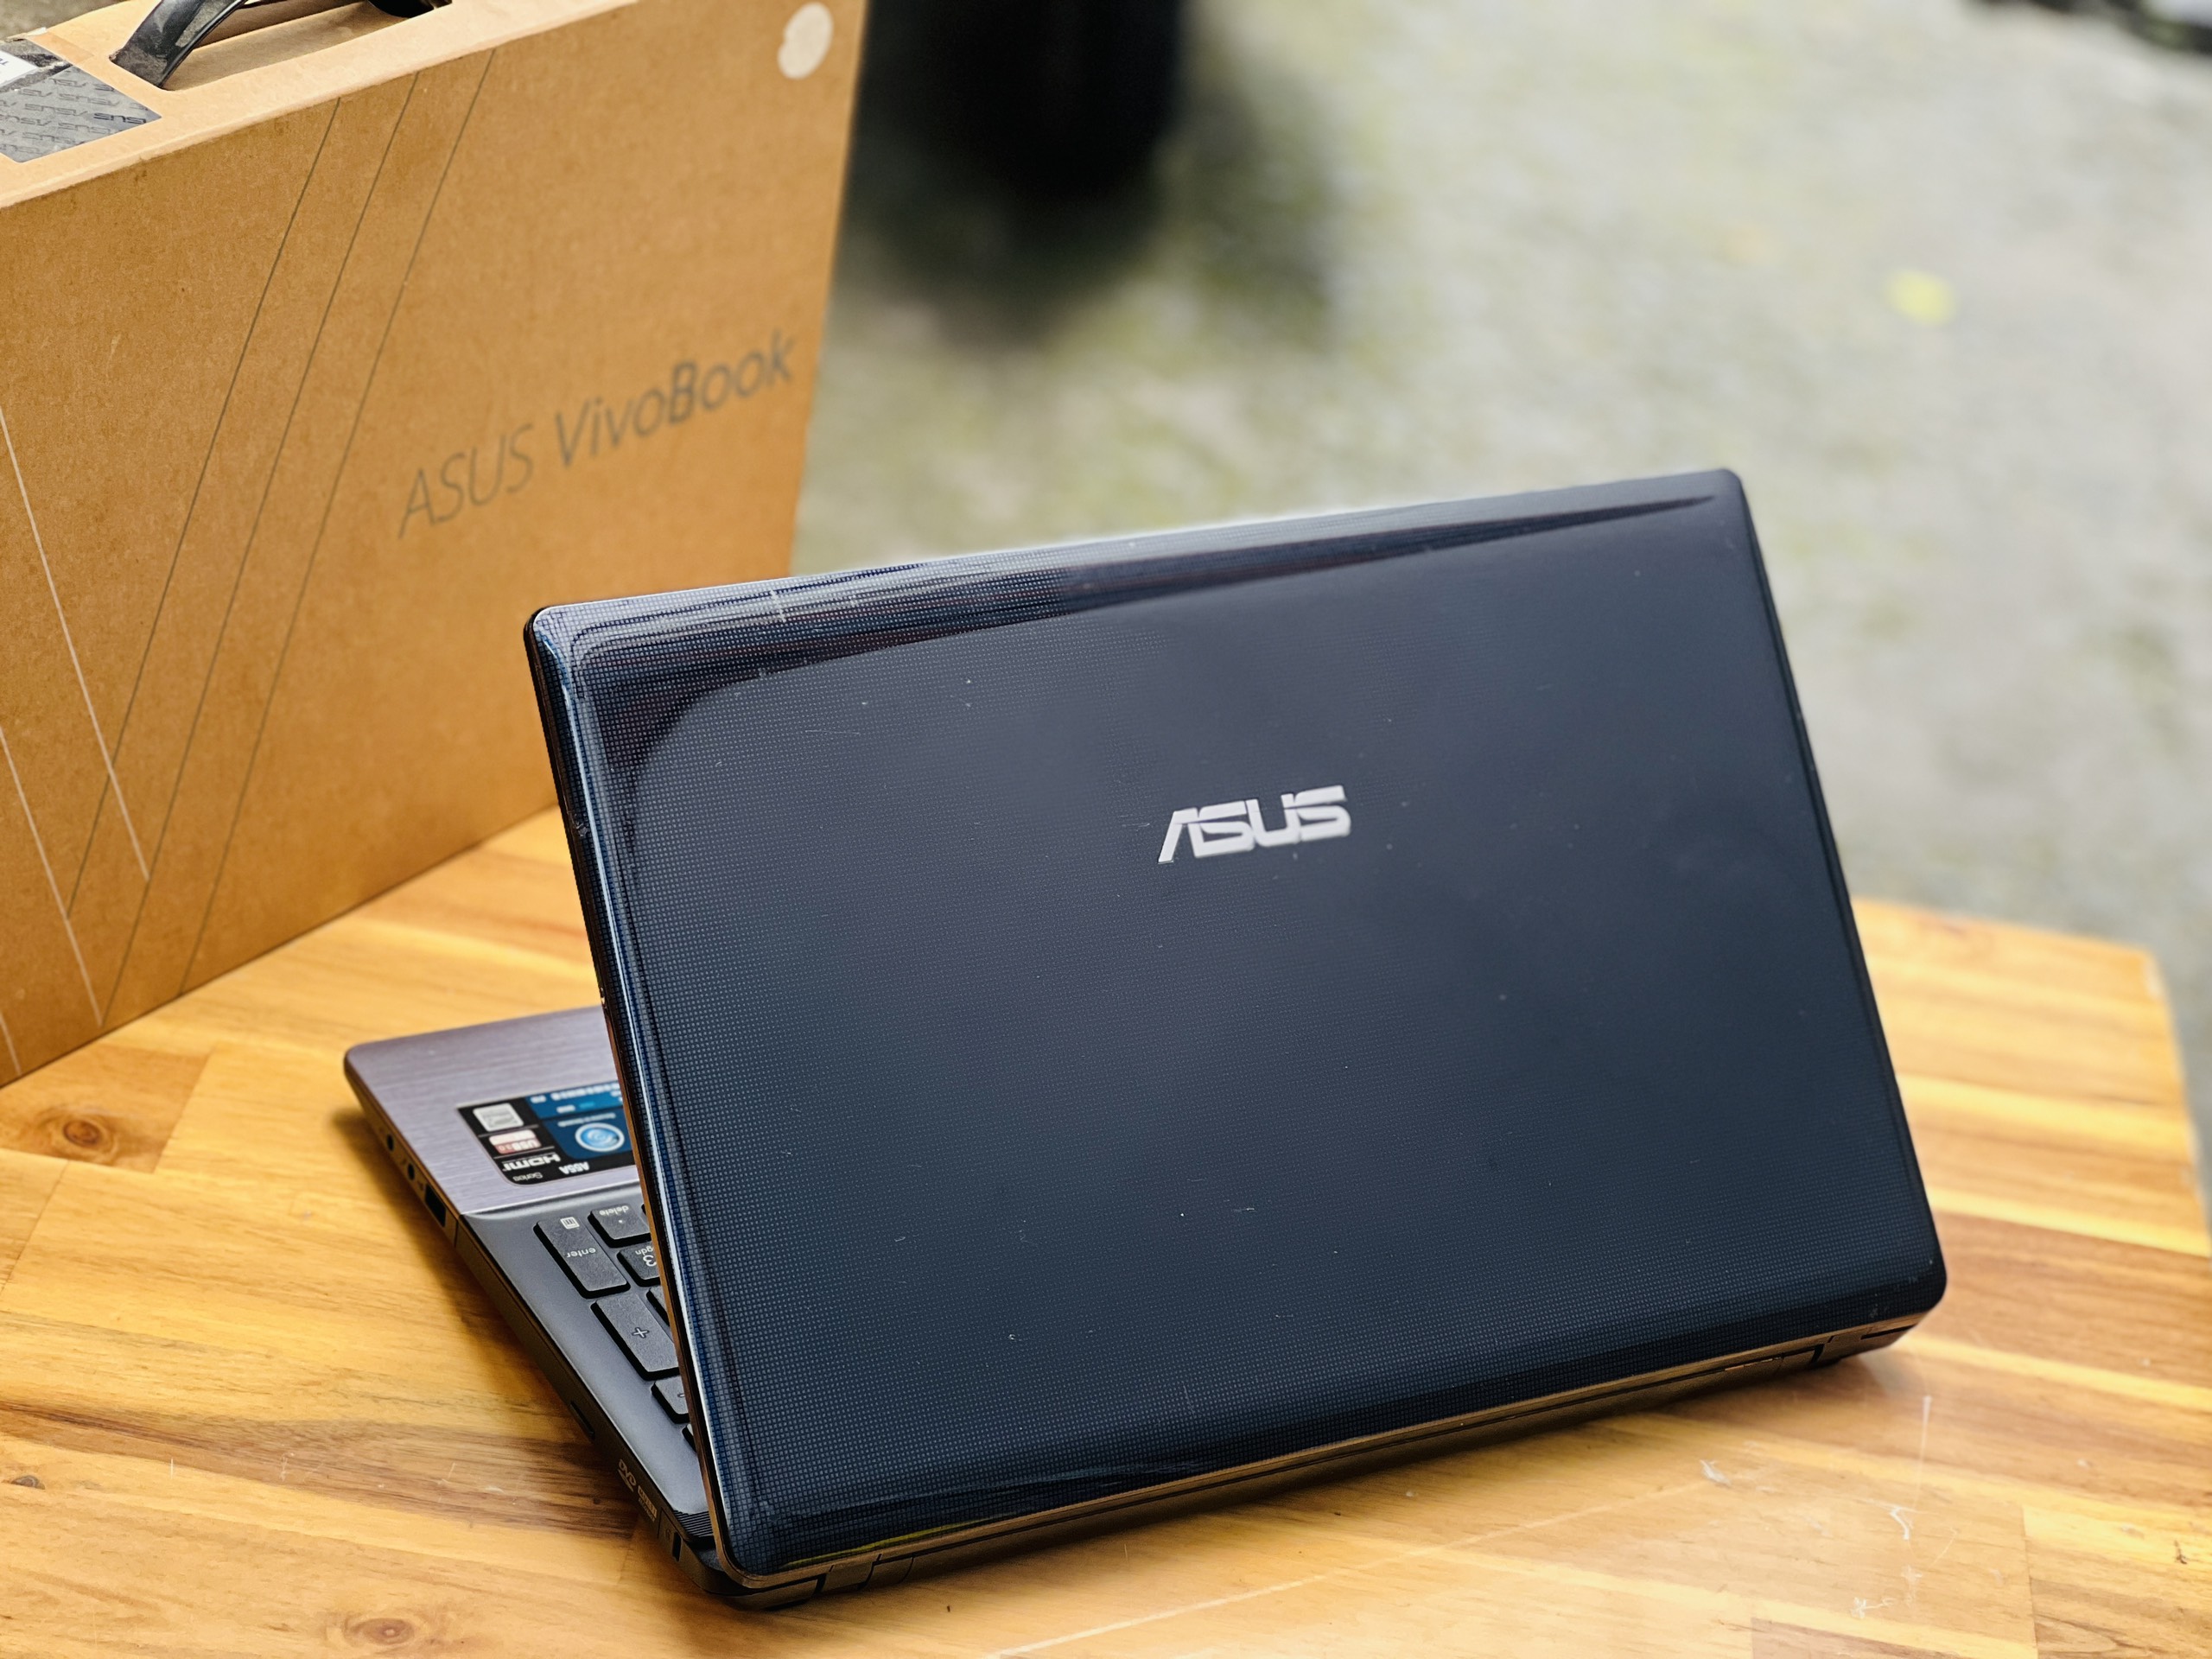 Laptop ASUS K55VD I5 3230M/ SSD/ Chơi Game/ Lập trình/ VGA HD4000/ Giá Rẻ3